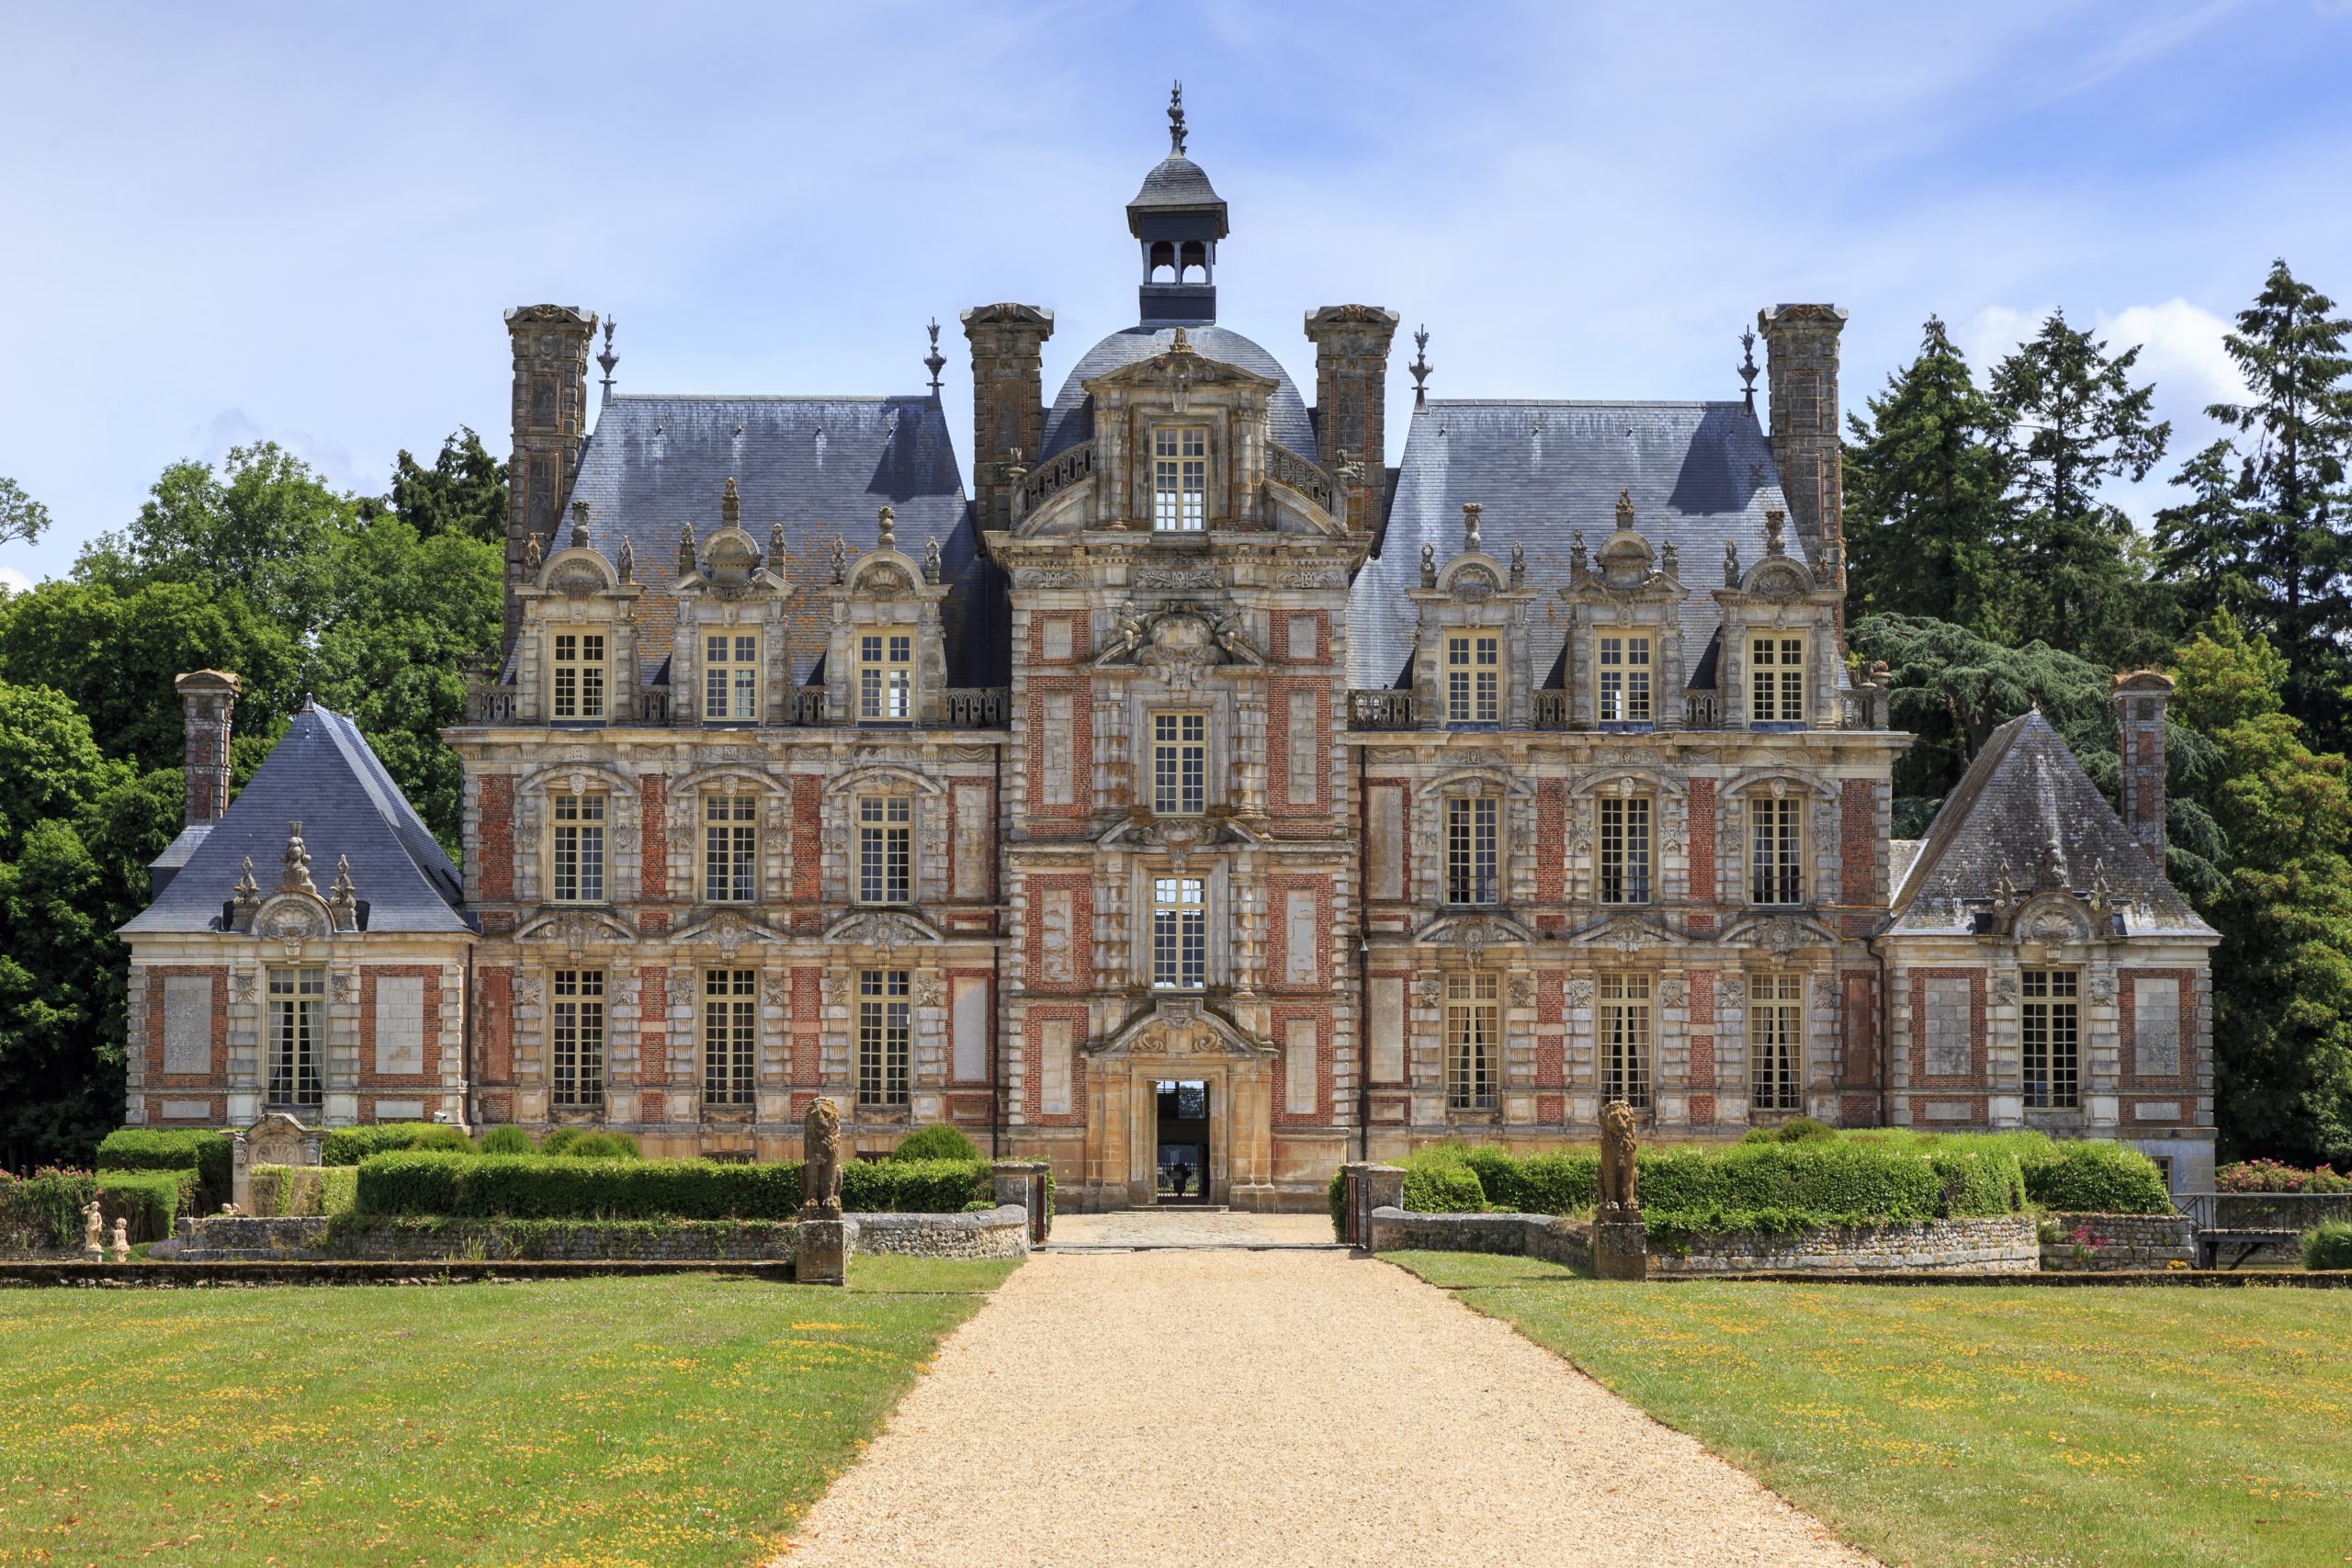 Château de Beaumesnil